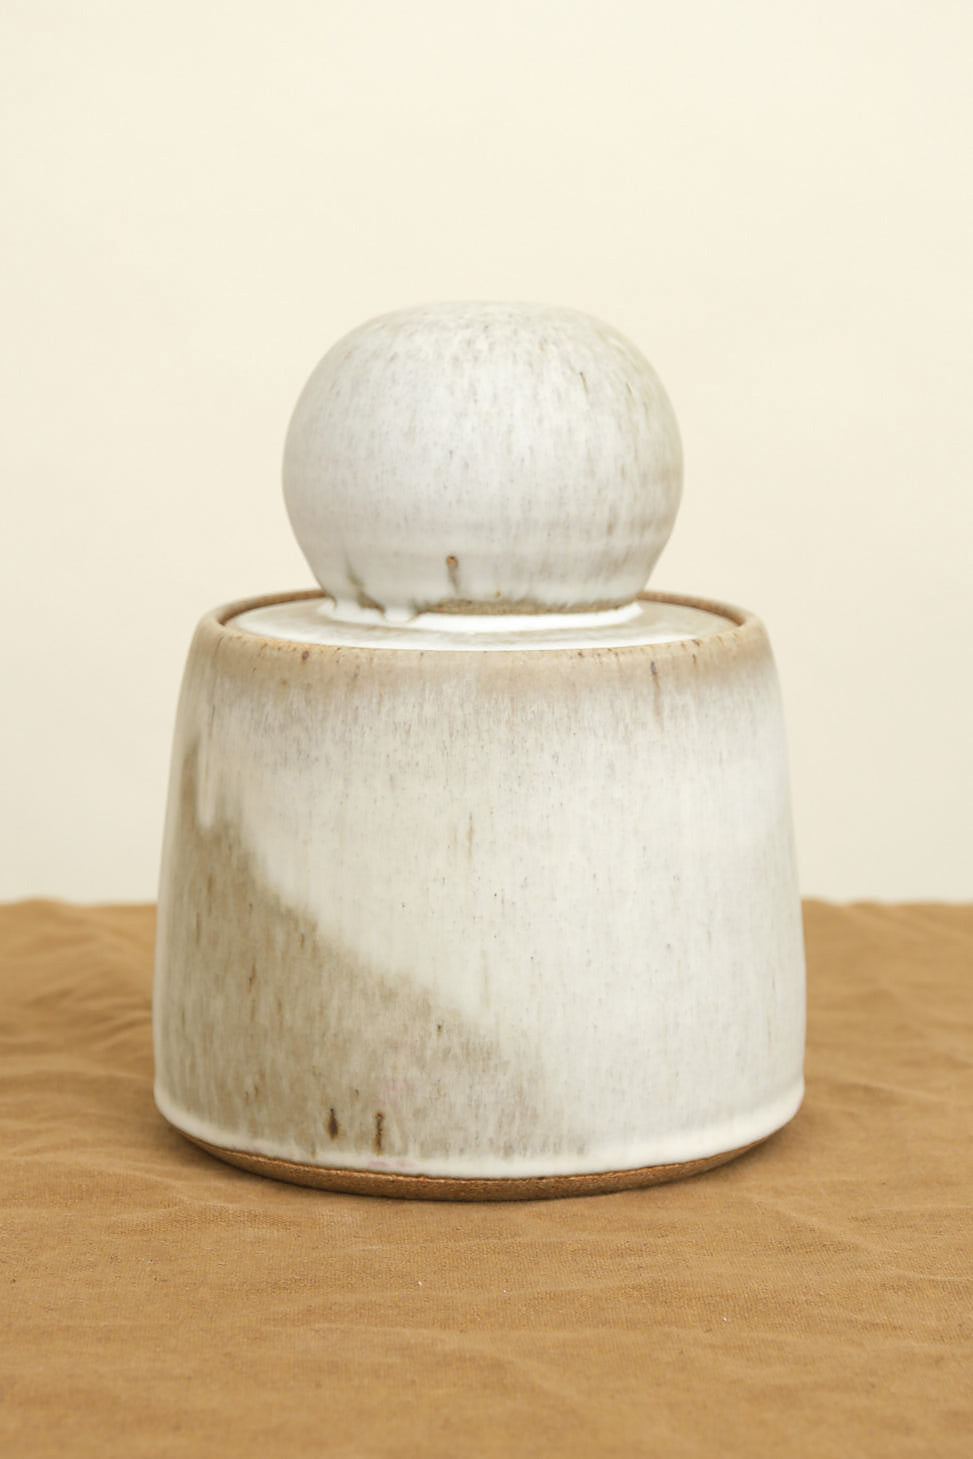 Large Stash Jar on table